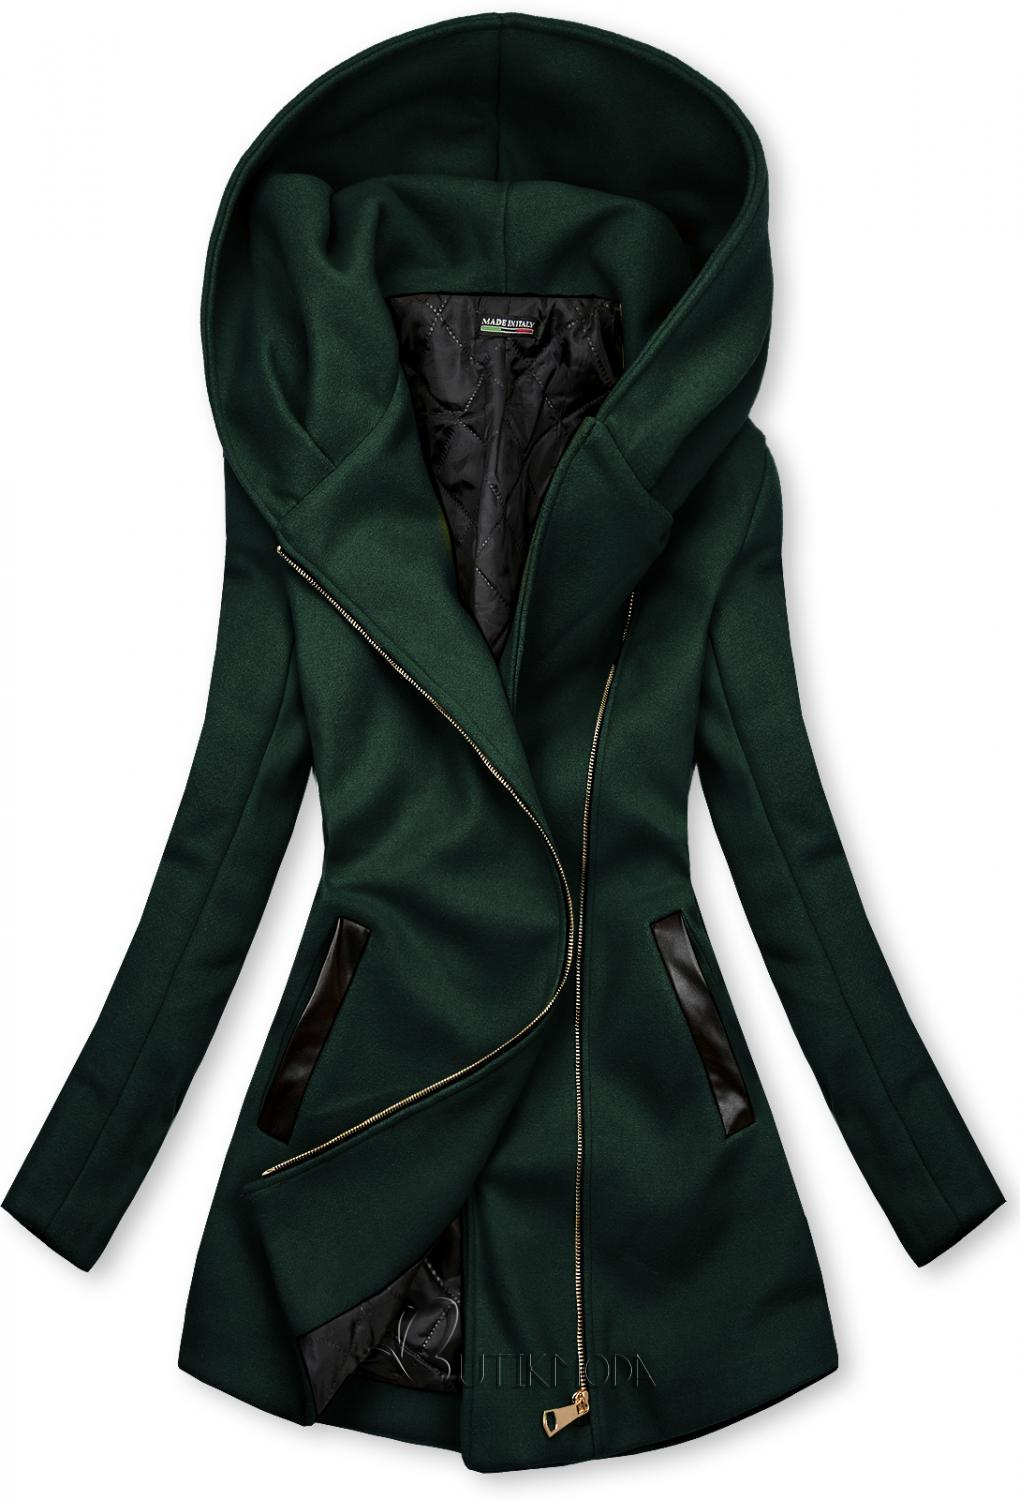 Sötétzöld színű kabát műbőr elemekkel